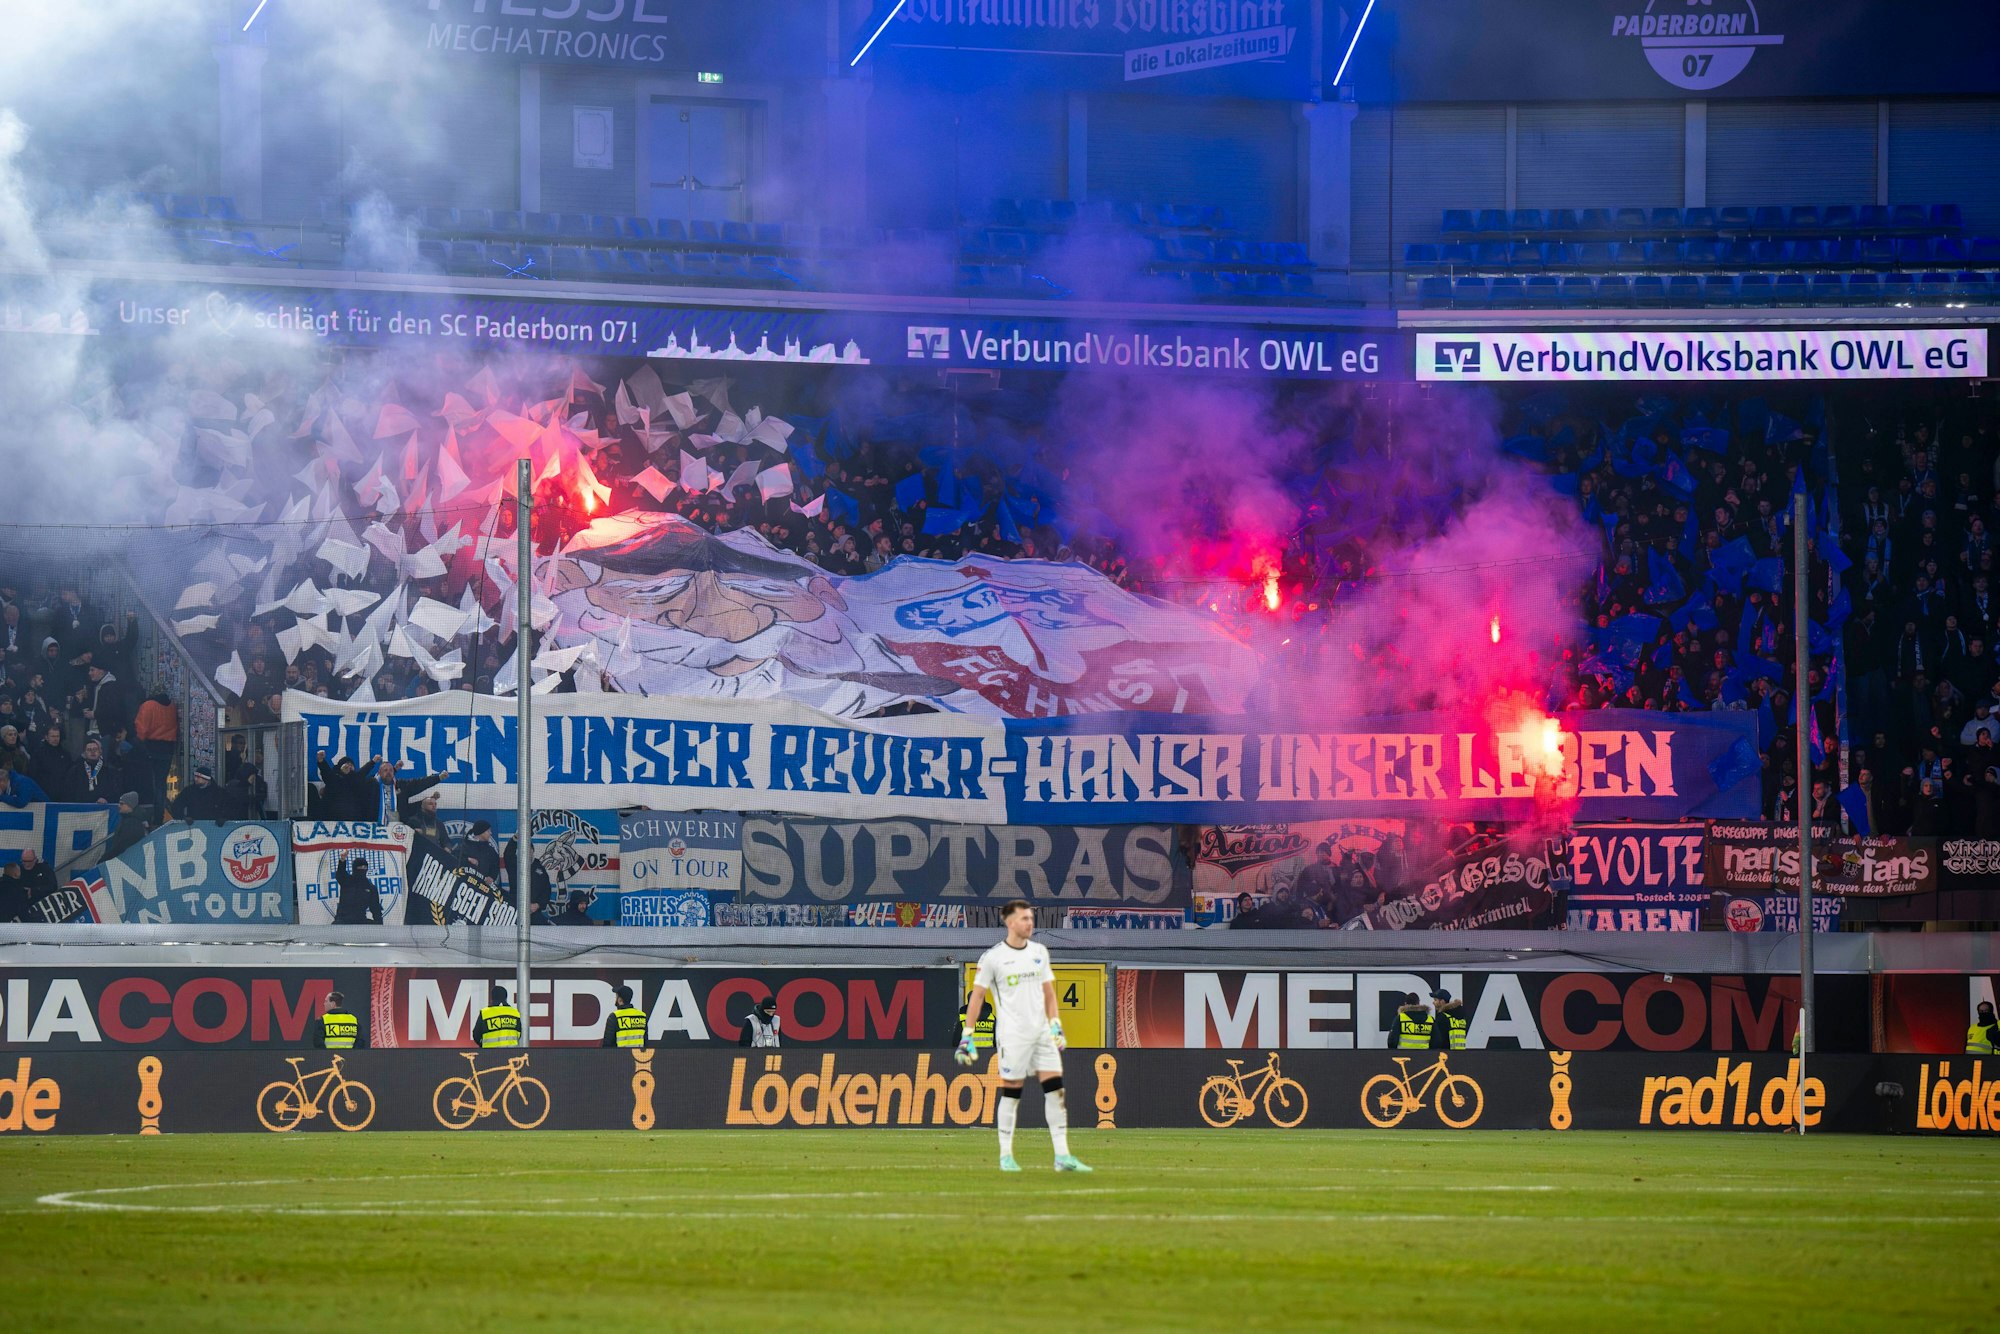 Die Rostocker Fans halten Banner mit der Aufschrift „Rügen unser Revier - Hansa unser Leben“ und zünden Pyrotechnik.